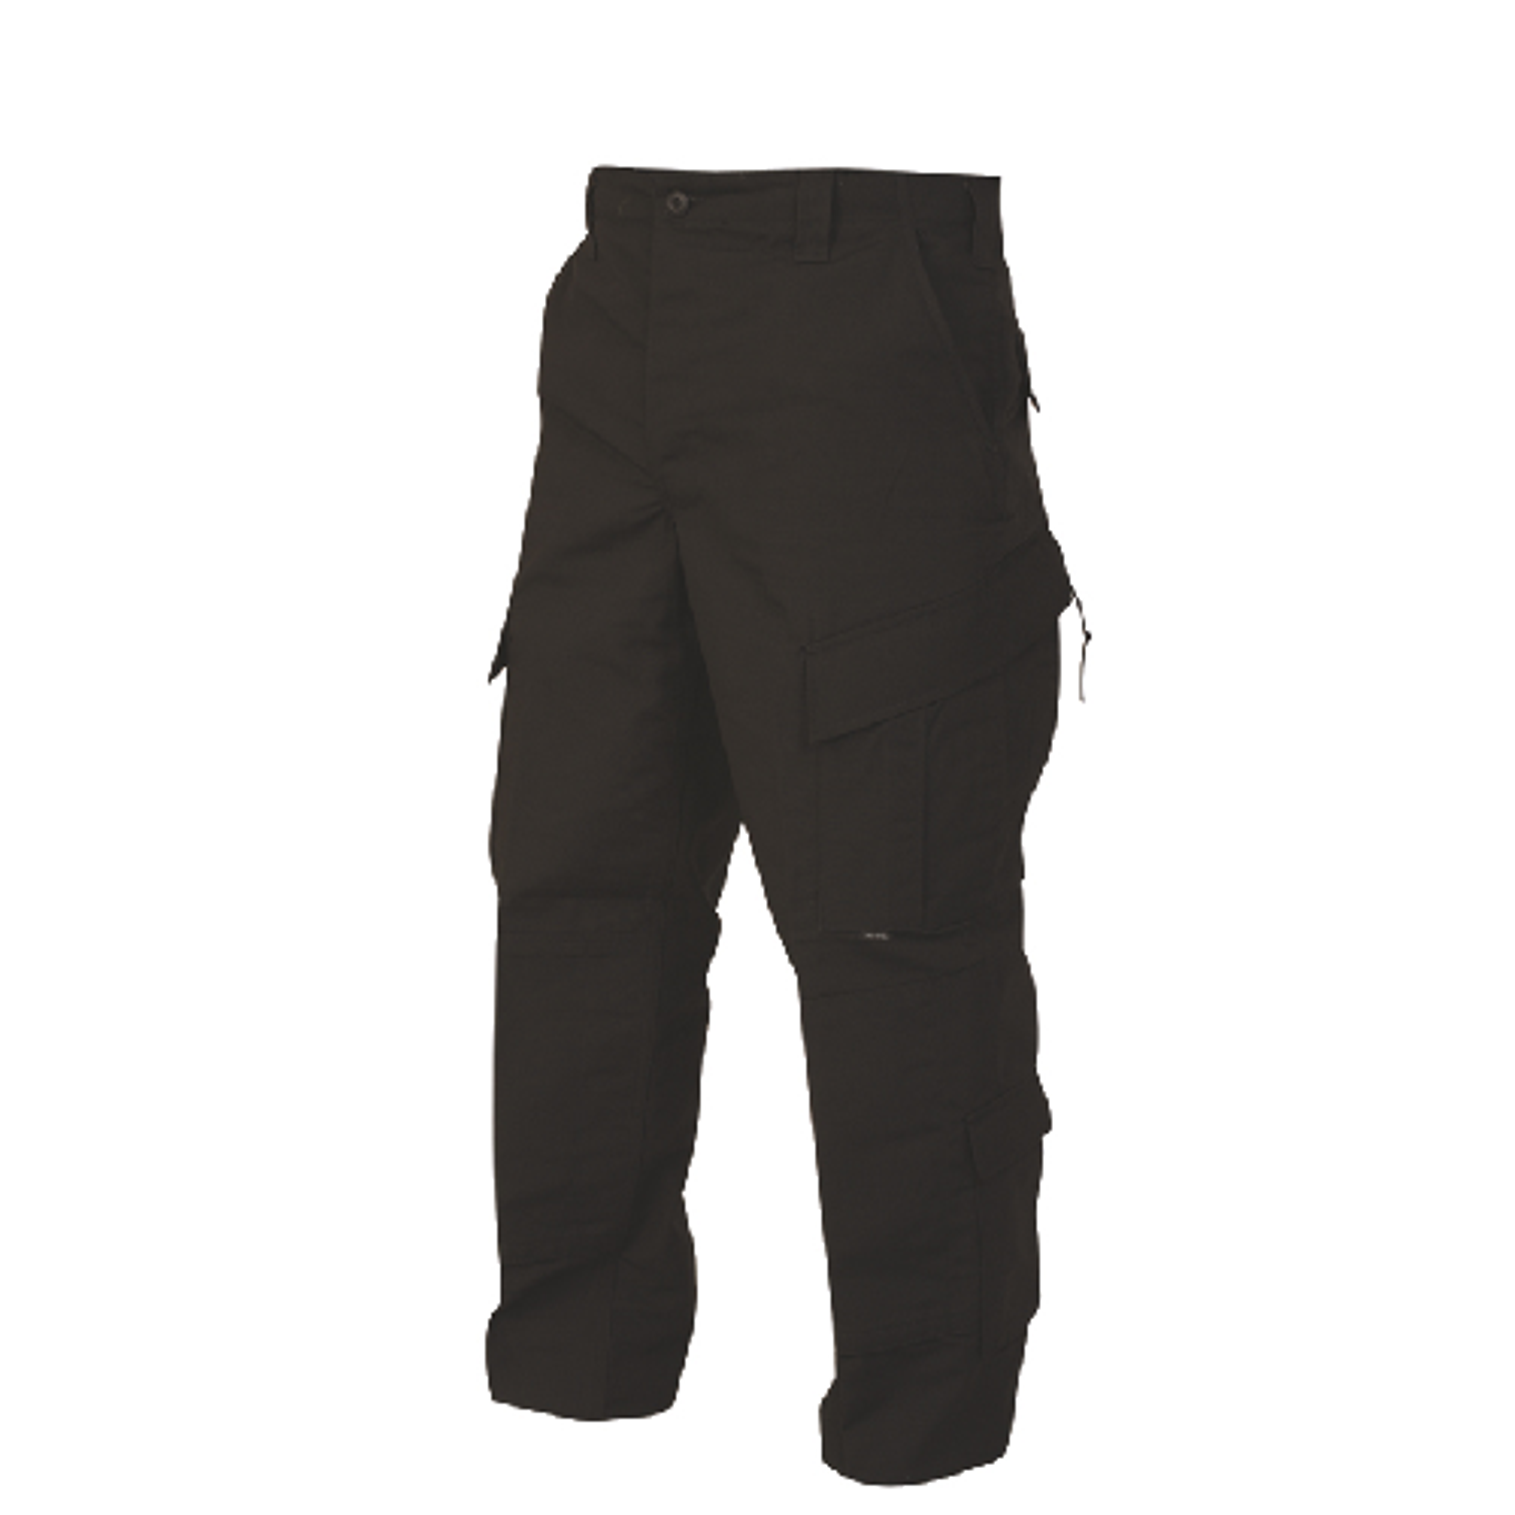 Tactical Response Uniform Pants - KRTSP-1289004